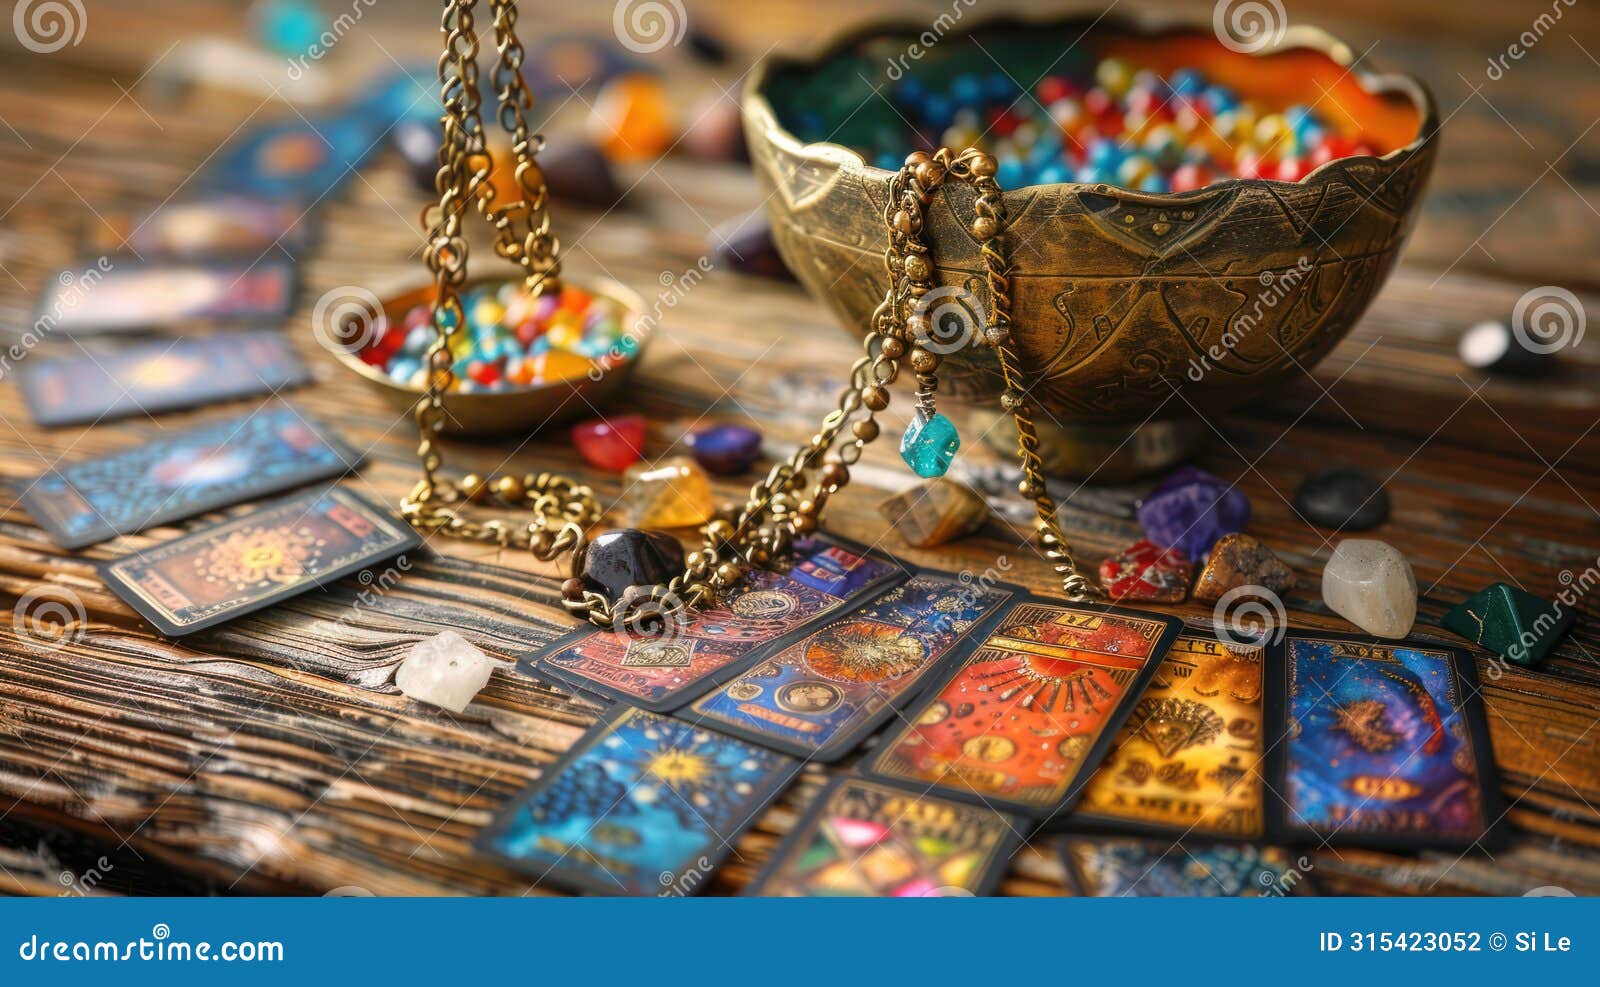 magical altar with tarot pendulum, cartomancy, chakra stones, and defocused cards